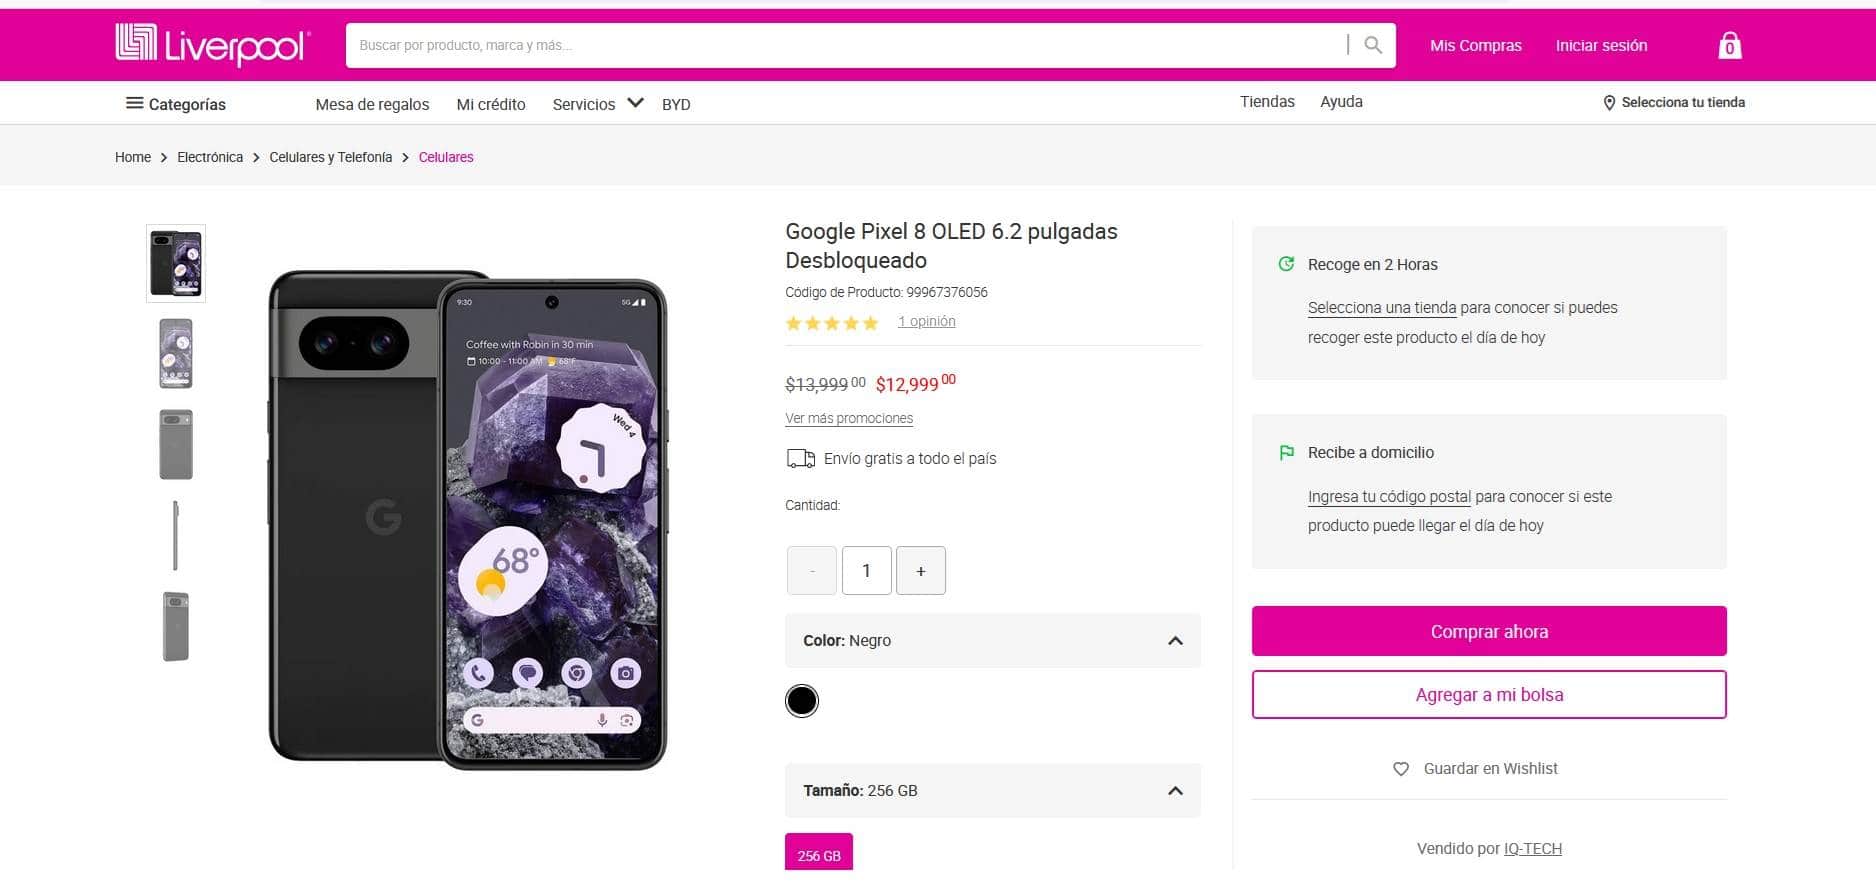 Cuánto cuesta el smartphone Google Pixel 8 en Liverpool